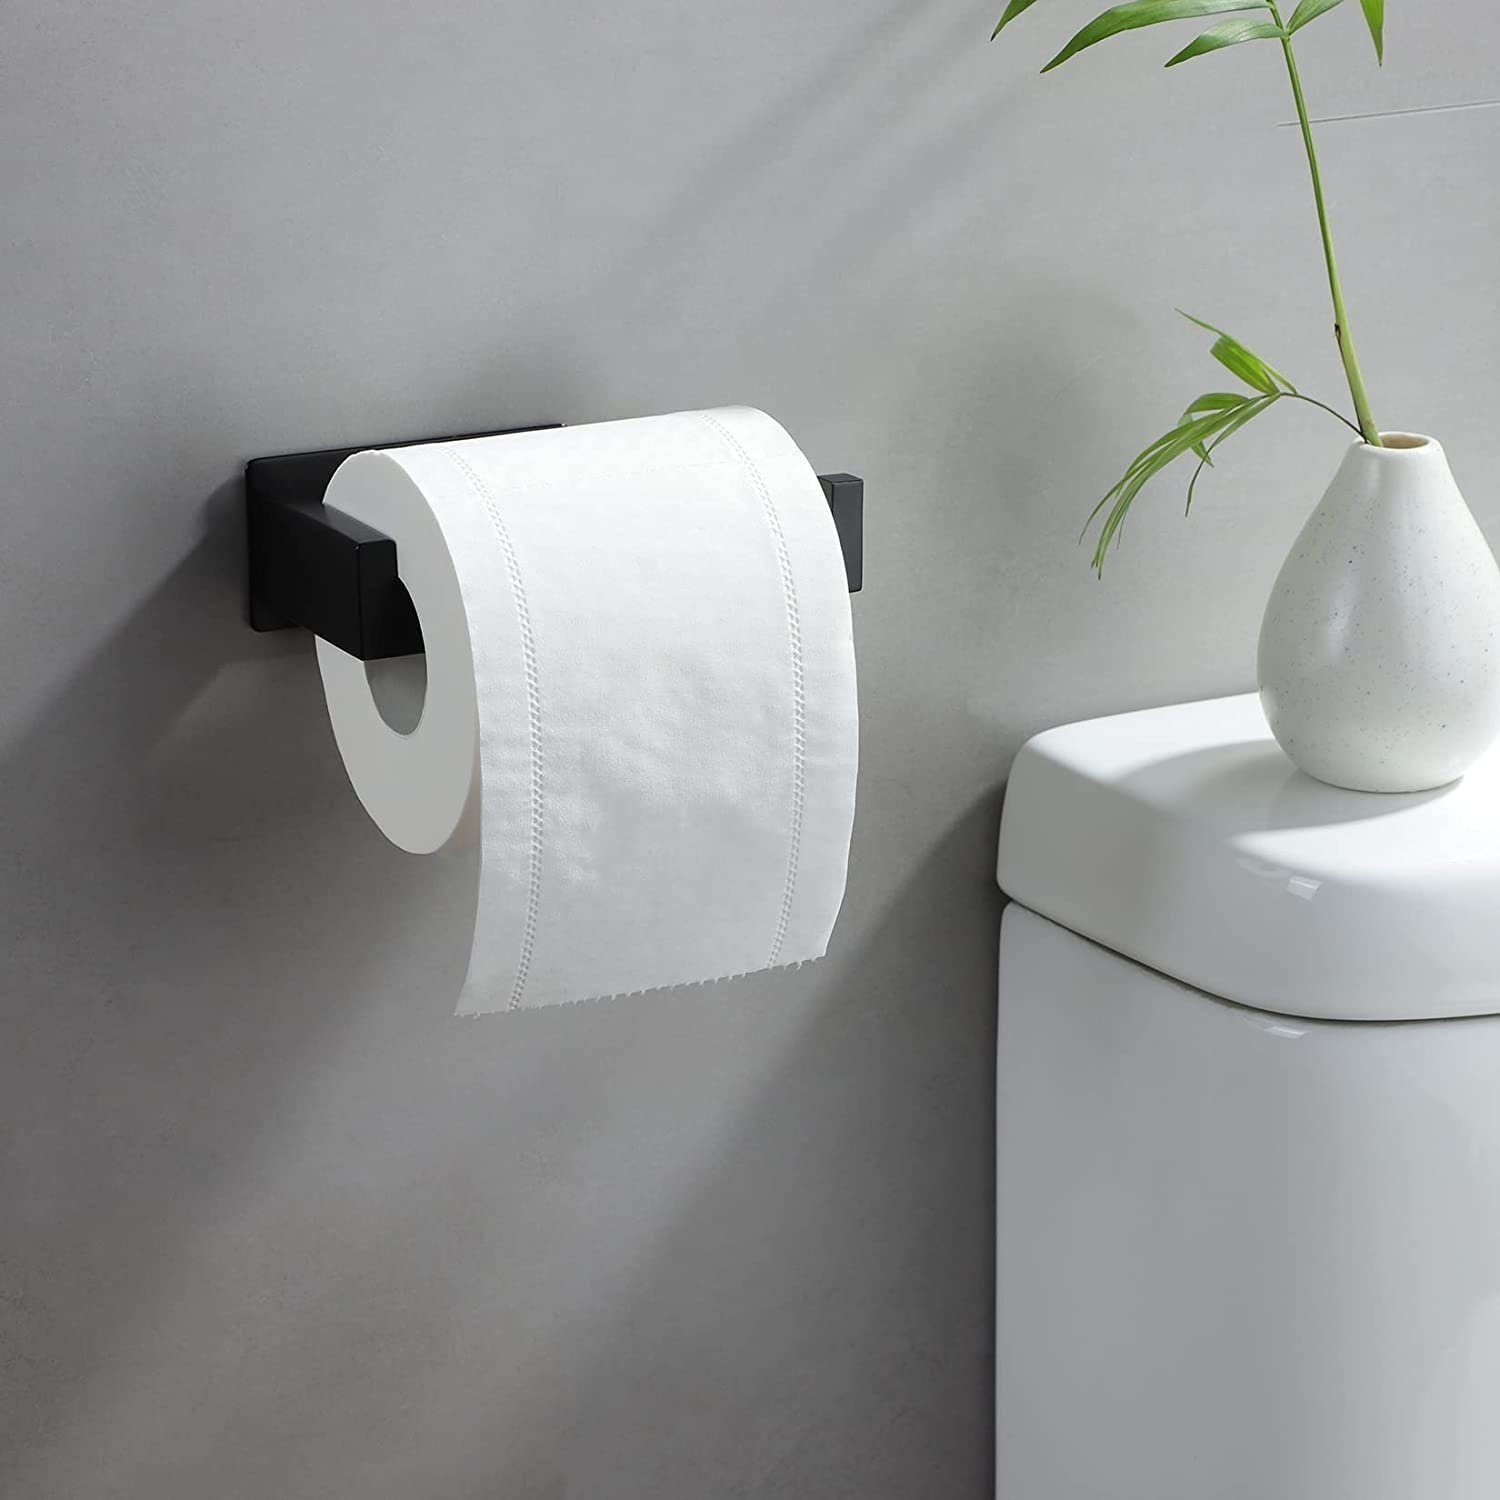 Haiaveng Toilettenpapierhalter Toilettenpapierhalter, kein Bohren Bohren schwarz, erforderlich, Kein